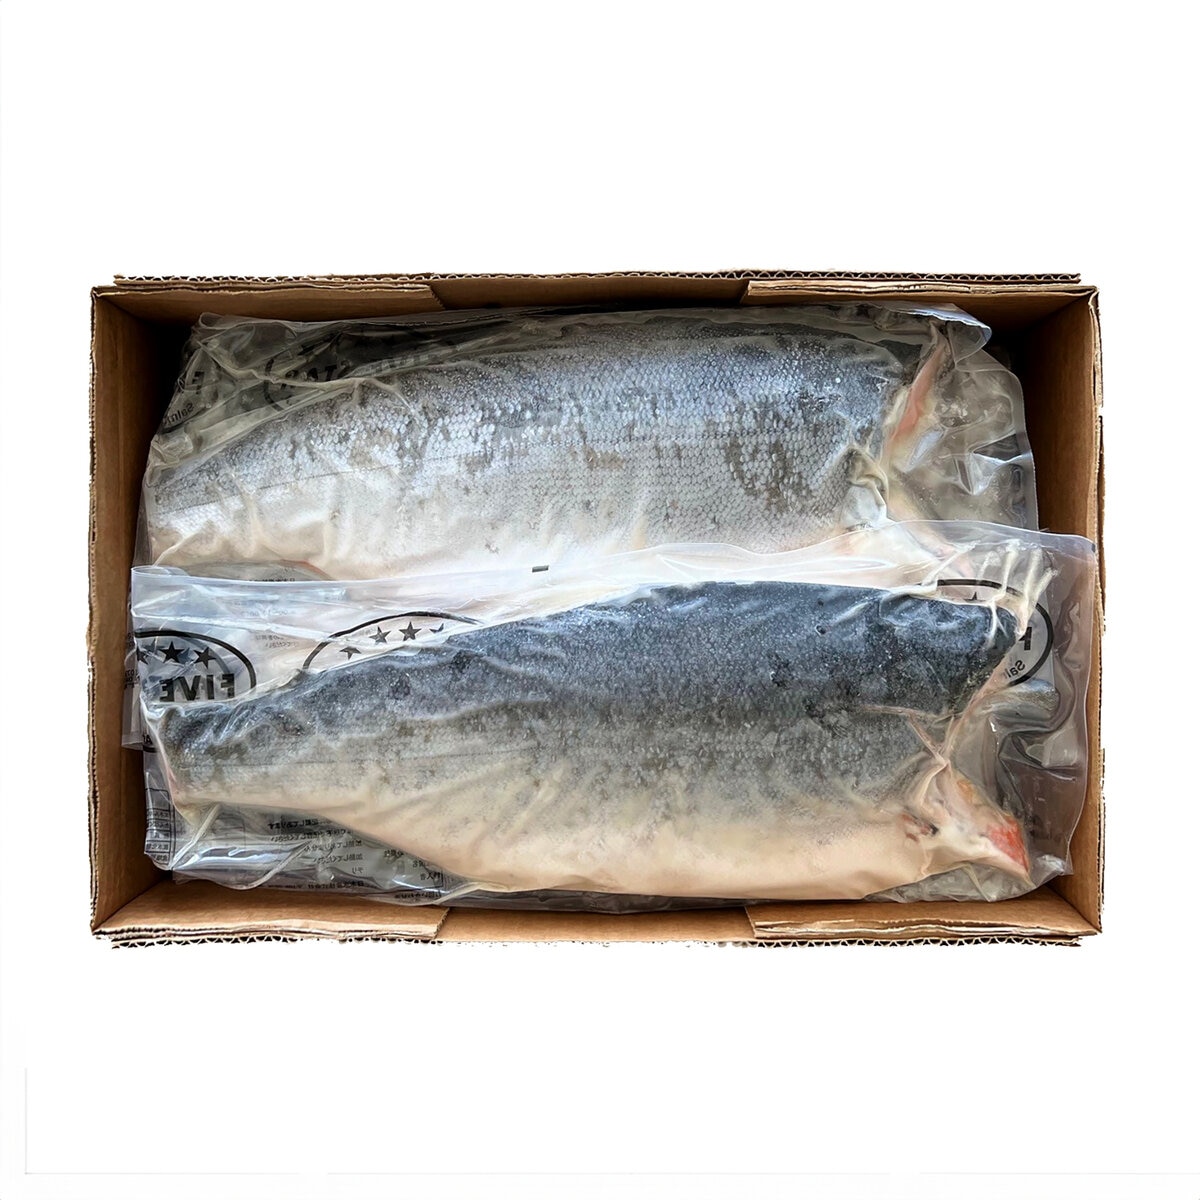 【冷凍】定塩銀鮭フィレ 10kg